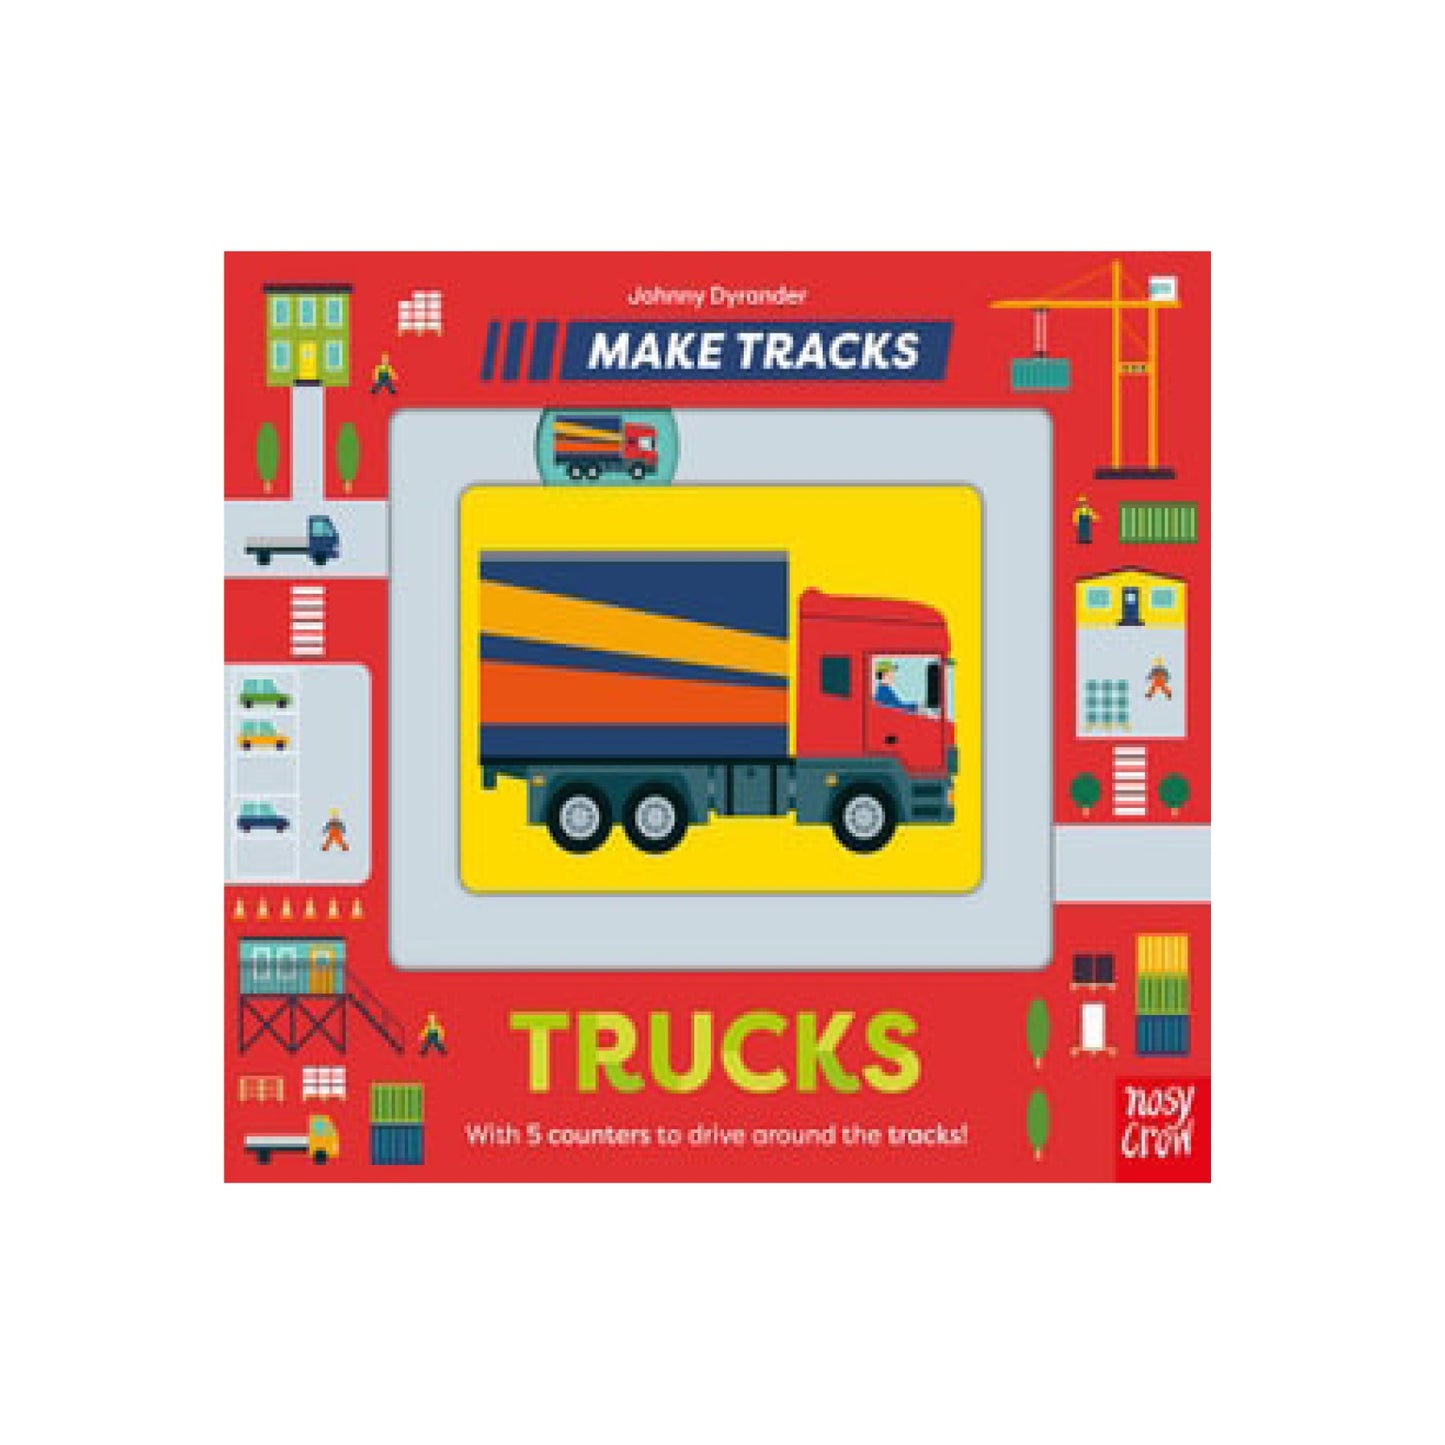 Trucks! Make Tracks